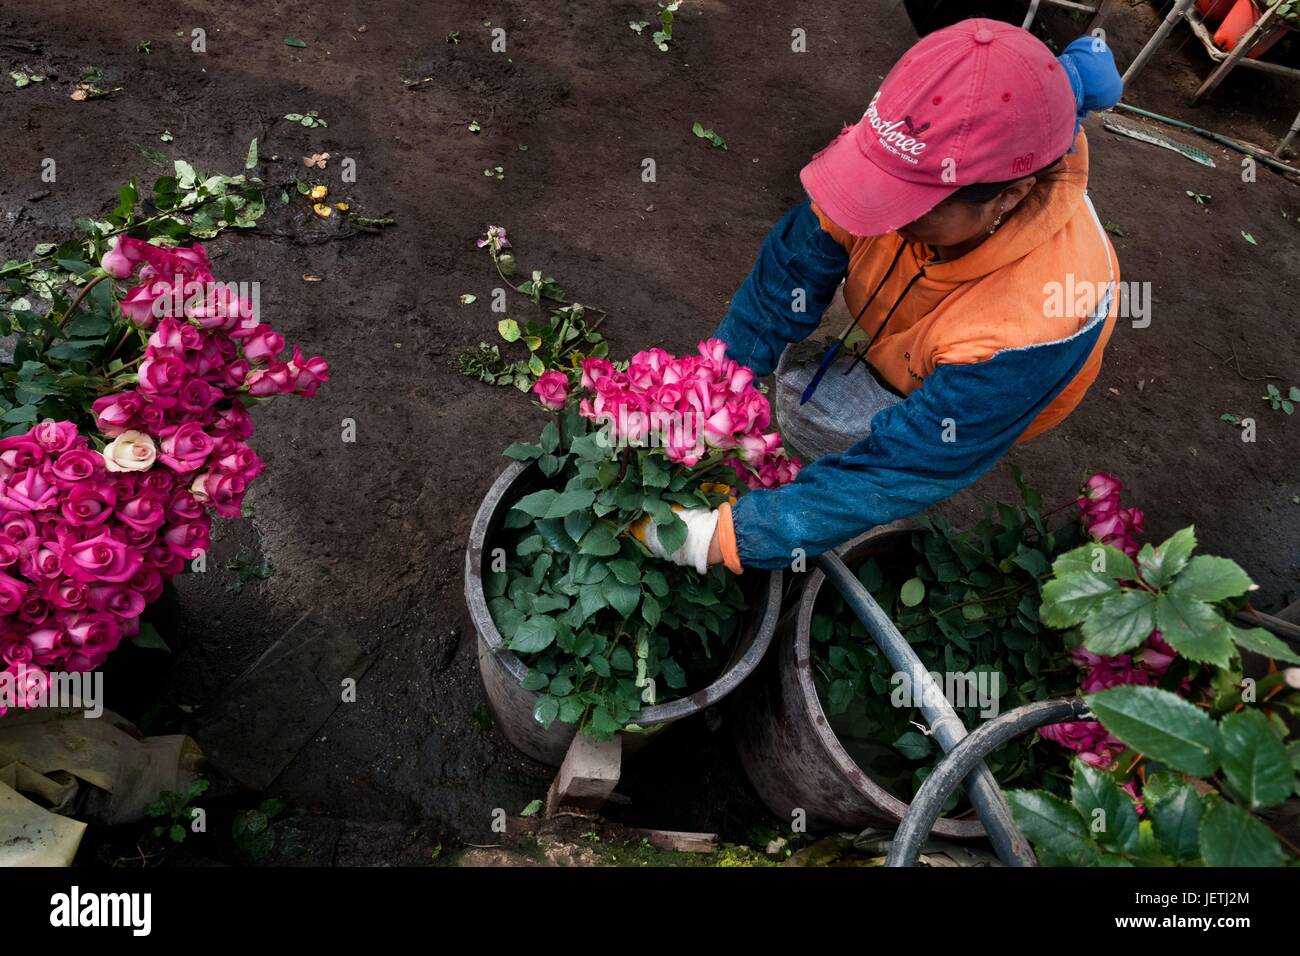 las rosas en un cultivo de flores en Cayambe, Ecuador, 23 de junio de 2010. Los países de América del Sur (Colombia y Ecuador) son líderes mundiales en la